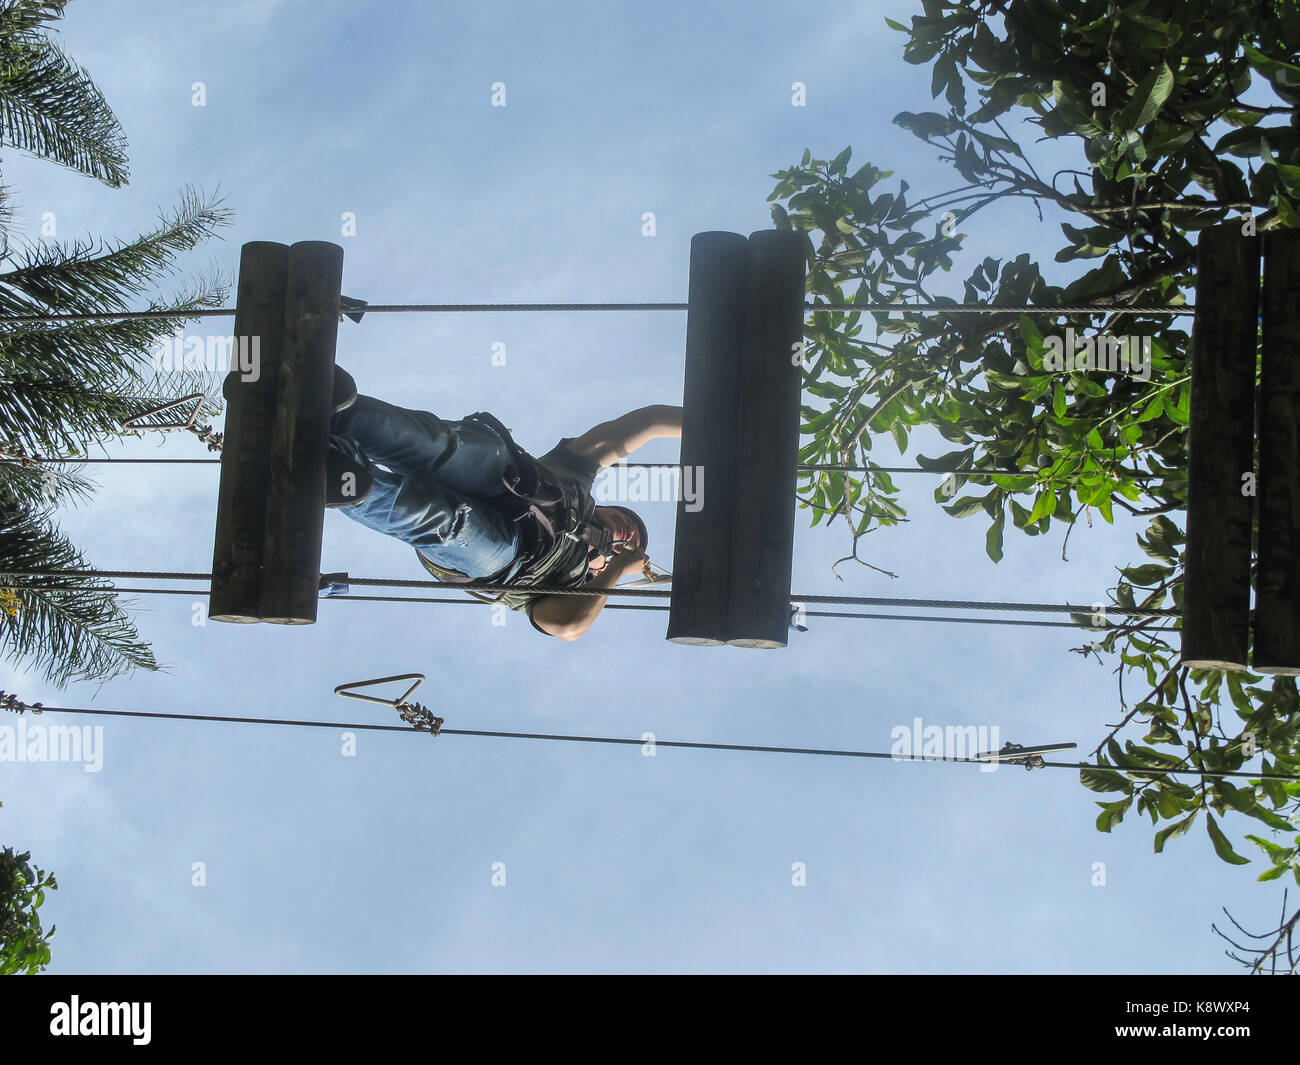 A girl climbing 12 feet over ground in El Salado Ecological Park Stock Photo